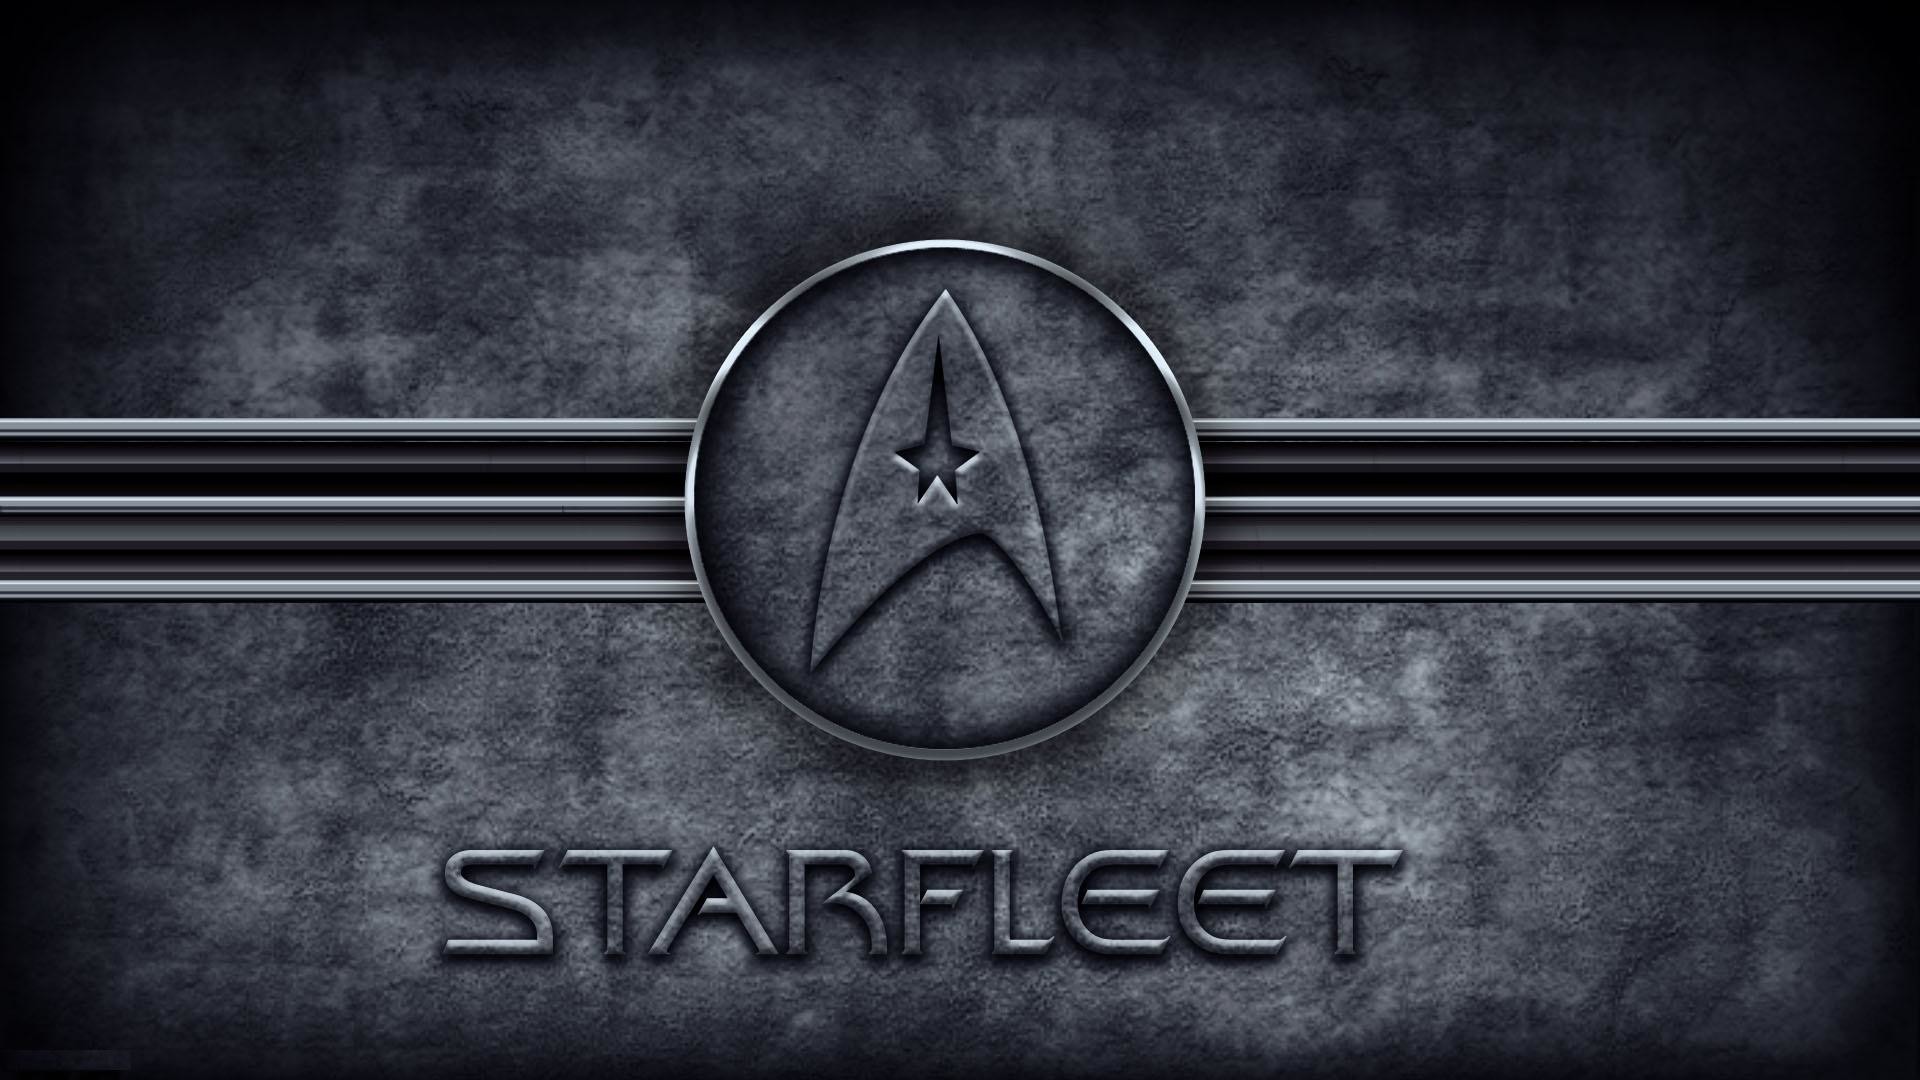 Star trek starfleet logo wallpaper HD